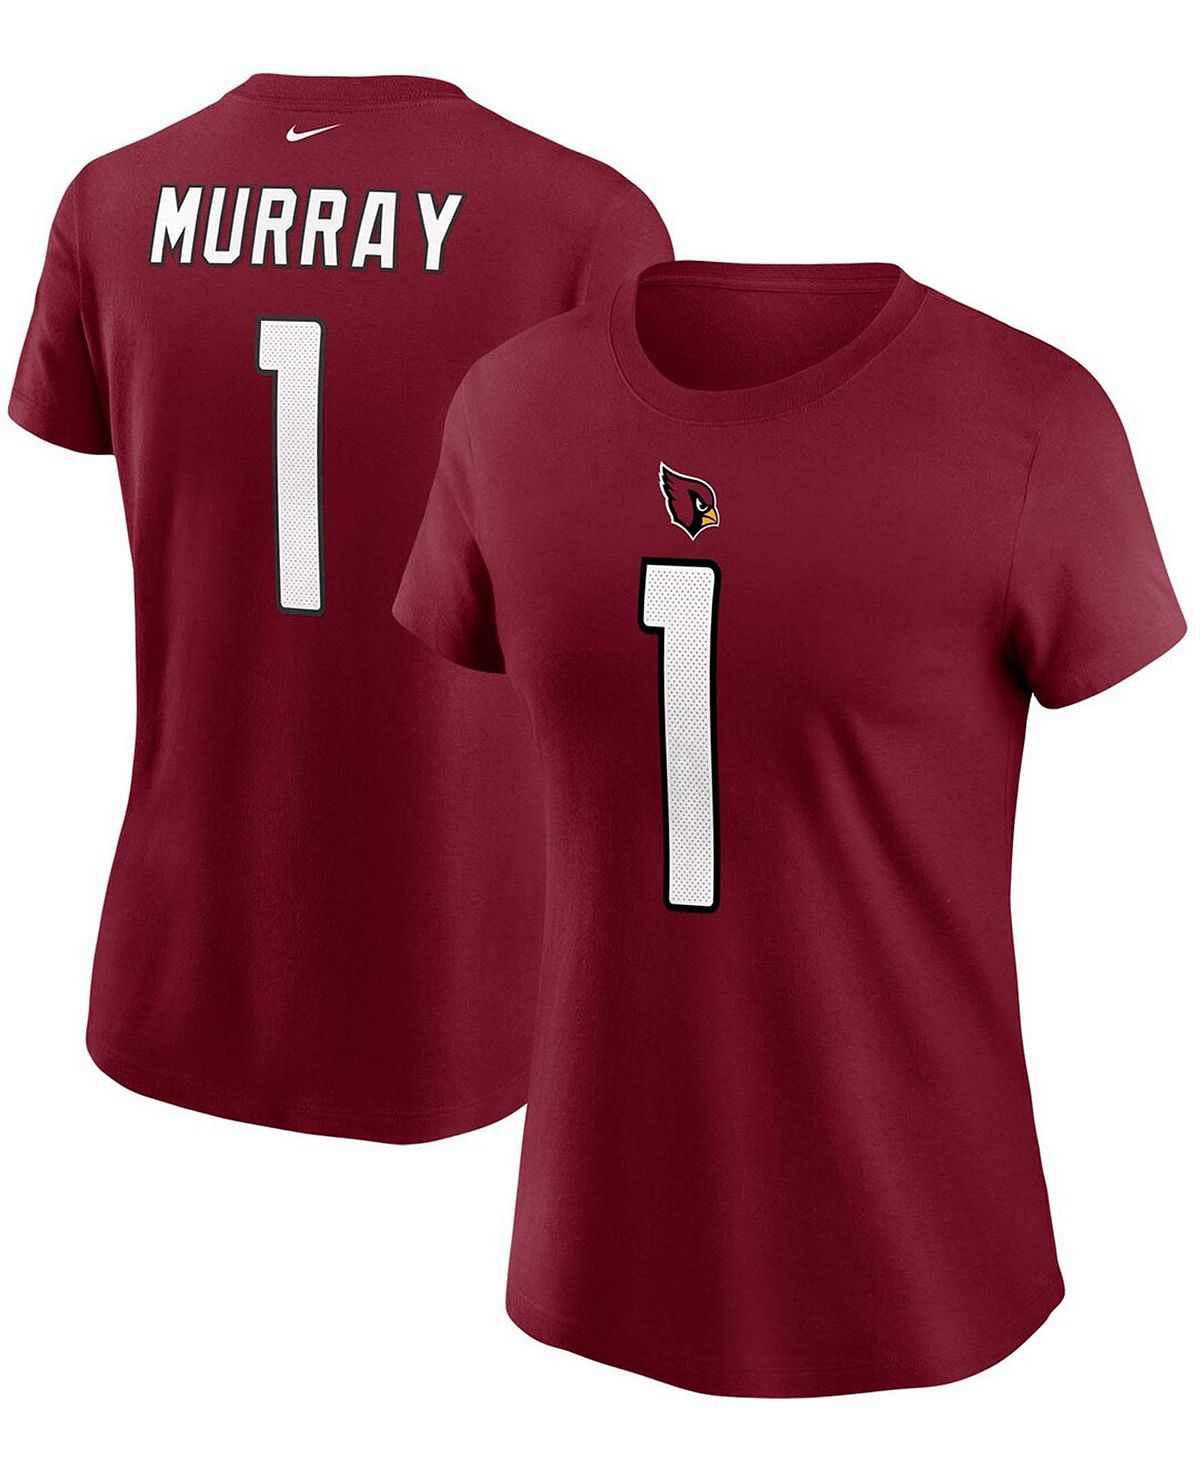 Женская футболка Kyler Murray Cardinal Arizona Cardinals с именем и номером Nike